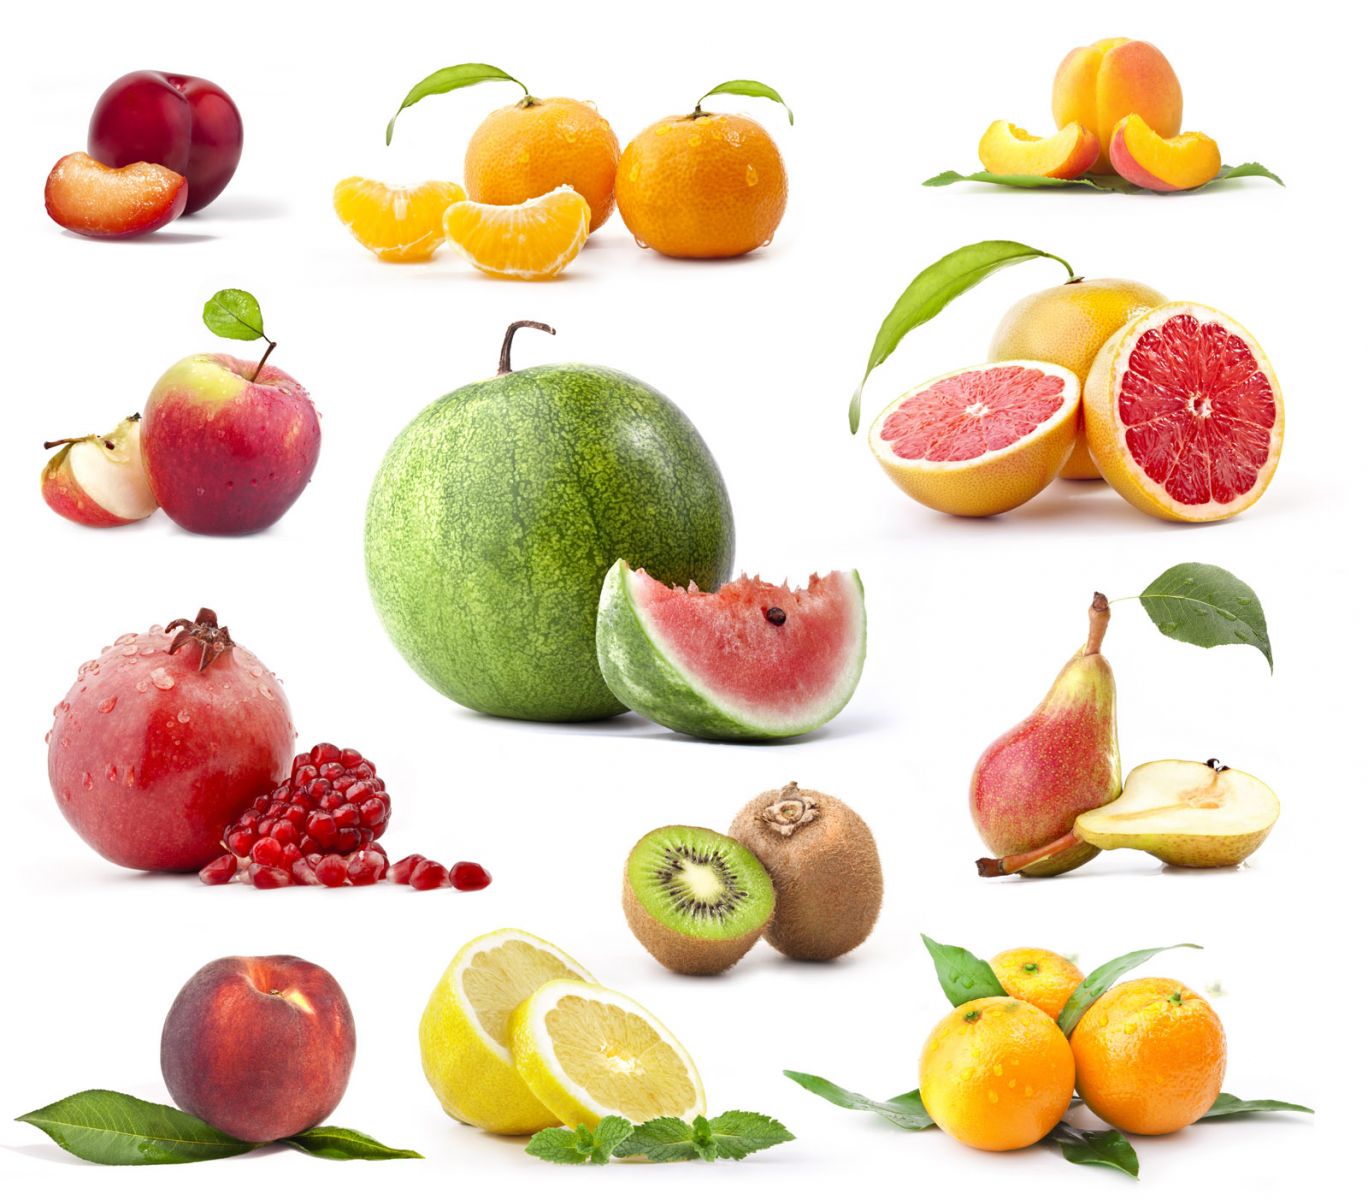 2 11 всех фруктов составляют персики. Фрукты для детей. Фрукты на белом фоне. Фрукты картинки для детей. Овощи, фрукты, ягоды.